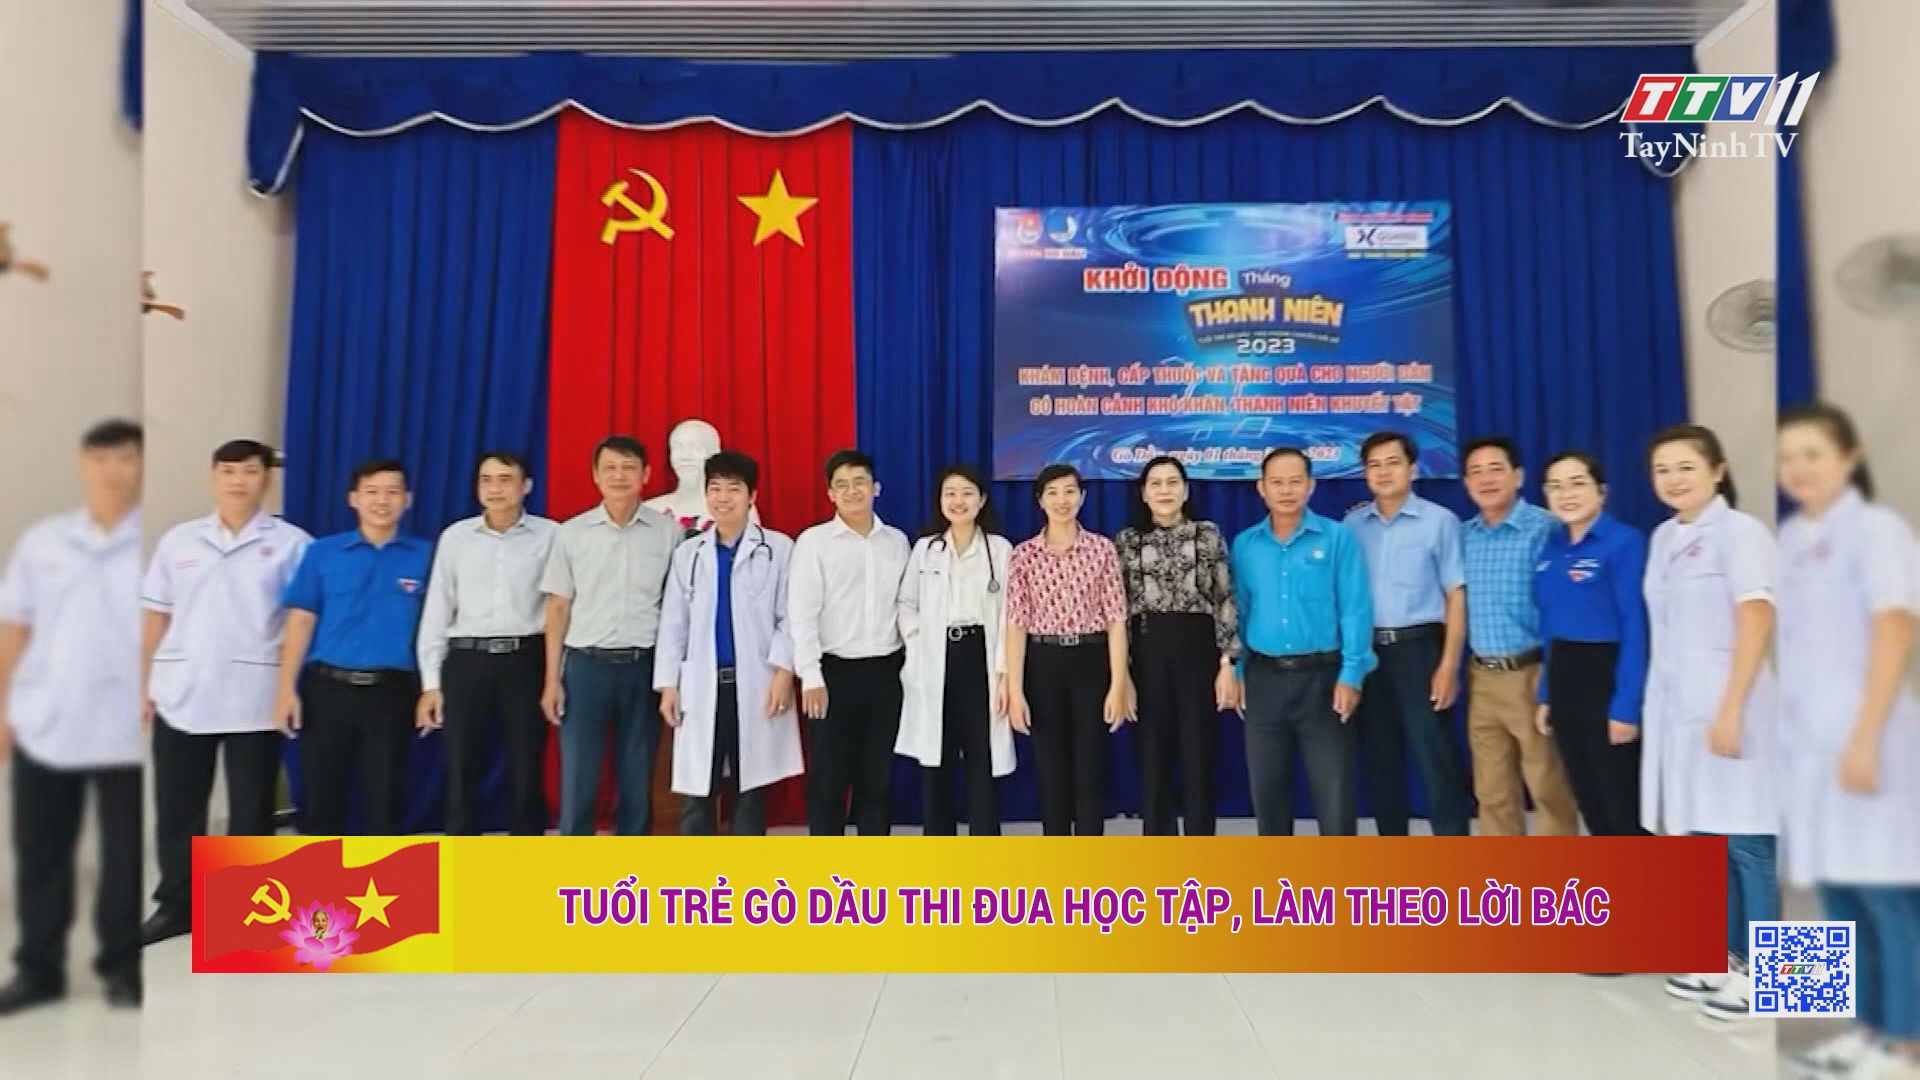 Tuổi trẻ Gò Dầu thi đua học tập, làm theo lời Bác | Học tập và làm theo tư tưởng đạo đức, phong cách Hồ Chí Minh | TayNinhTV